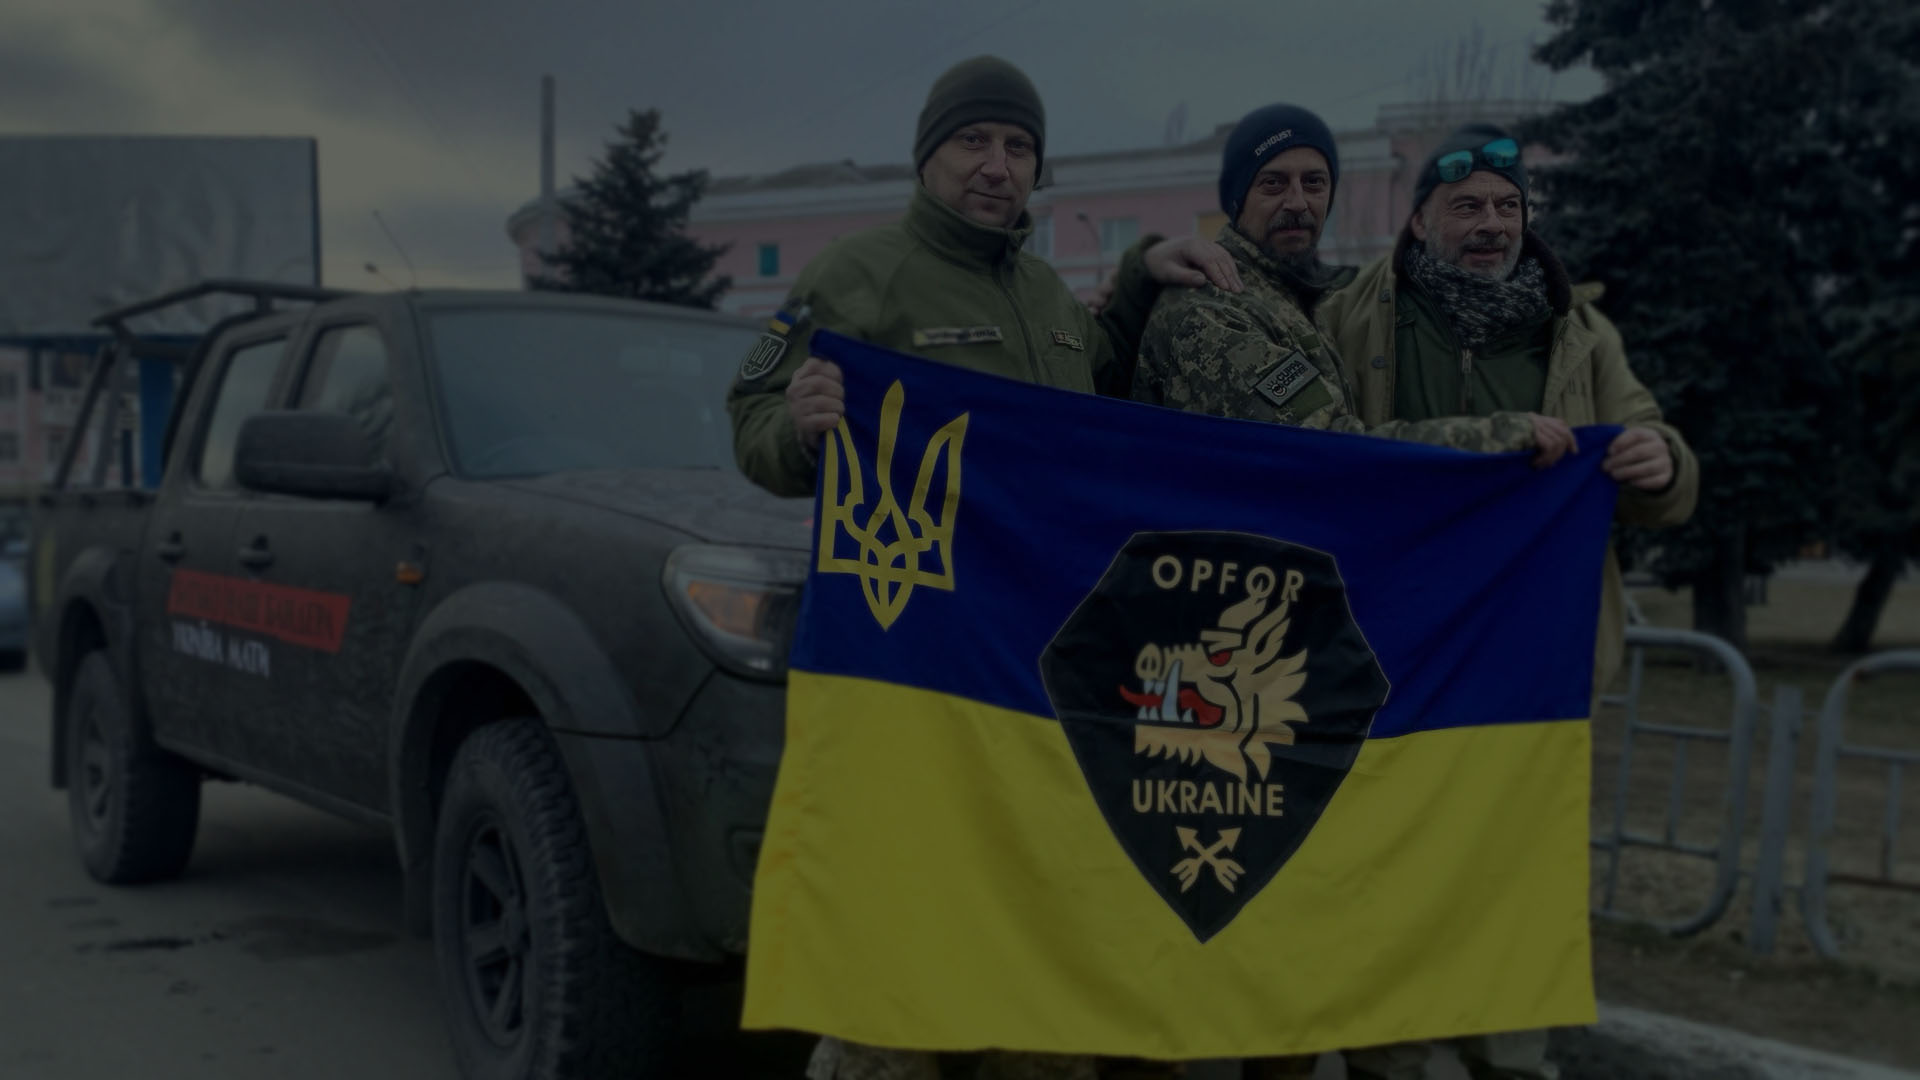 Deux soldats UA de l'OPFOR et Adam tiennent le drapeau ukrainien devant le camionnette militarisée.